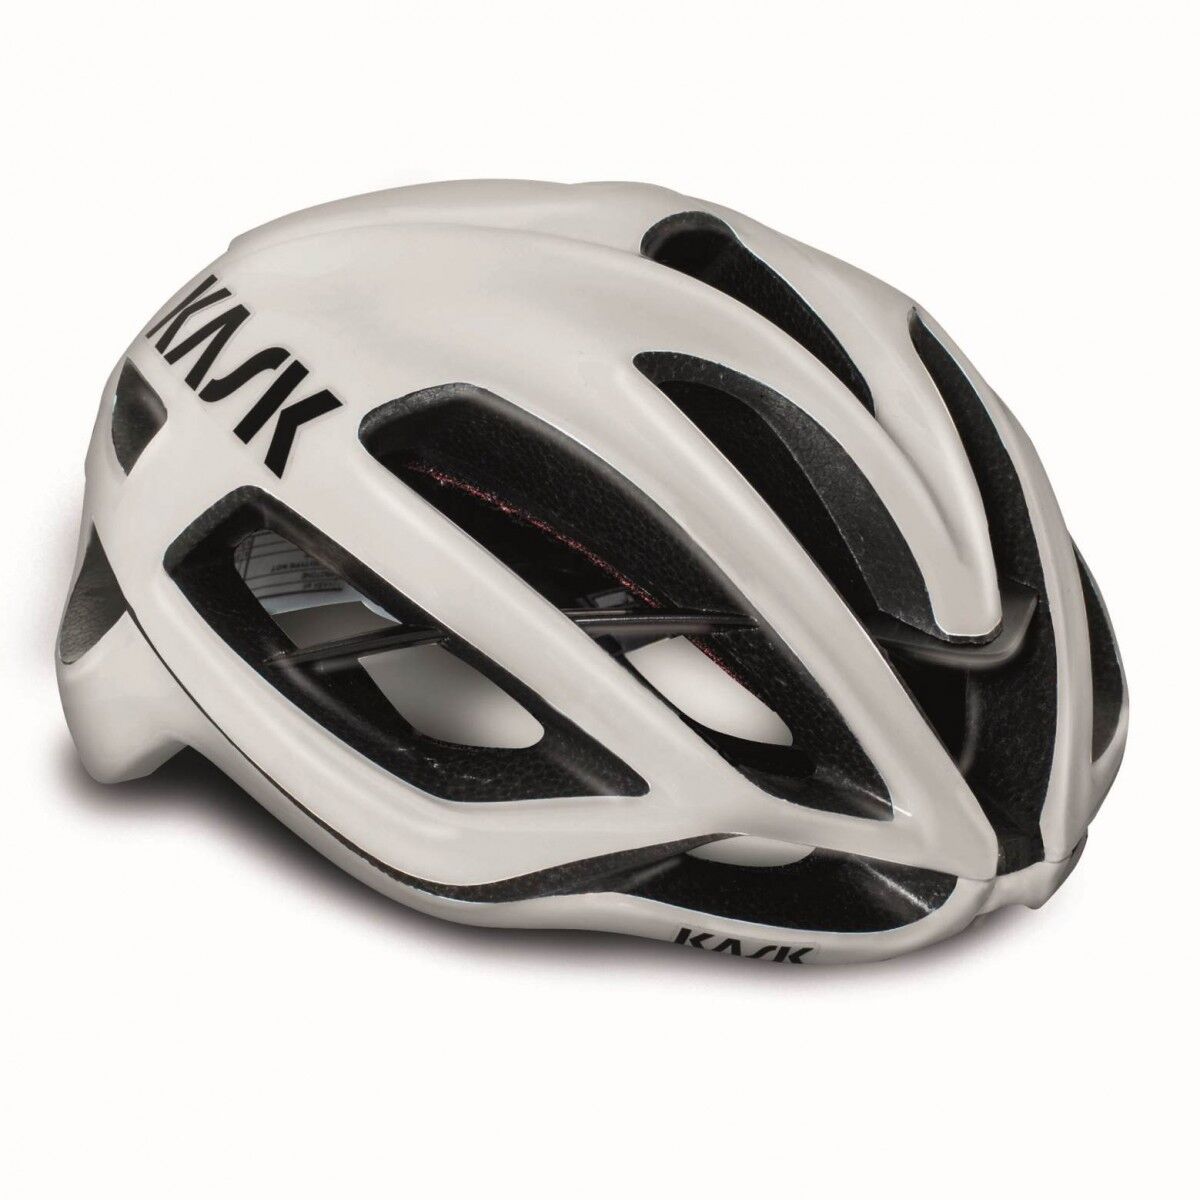 KASK Protone WG11 - Road bike helmet